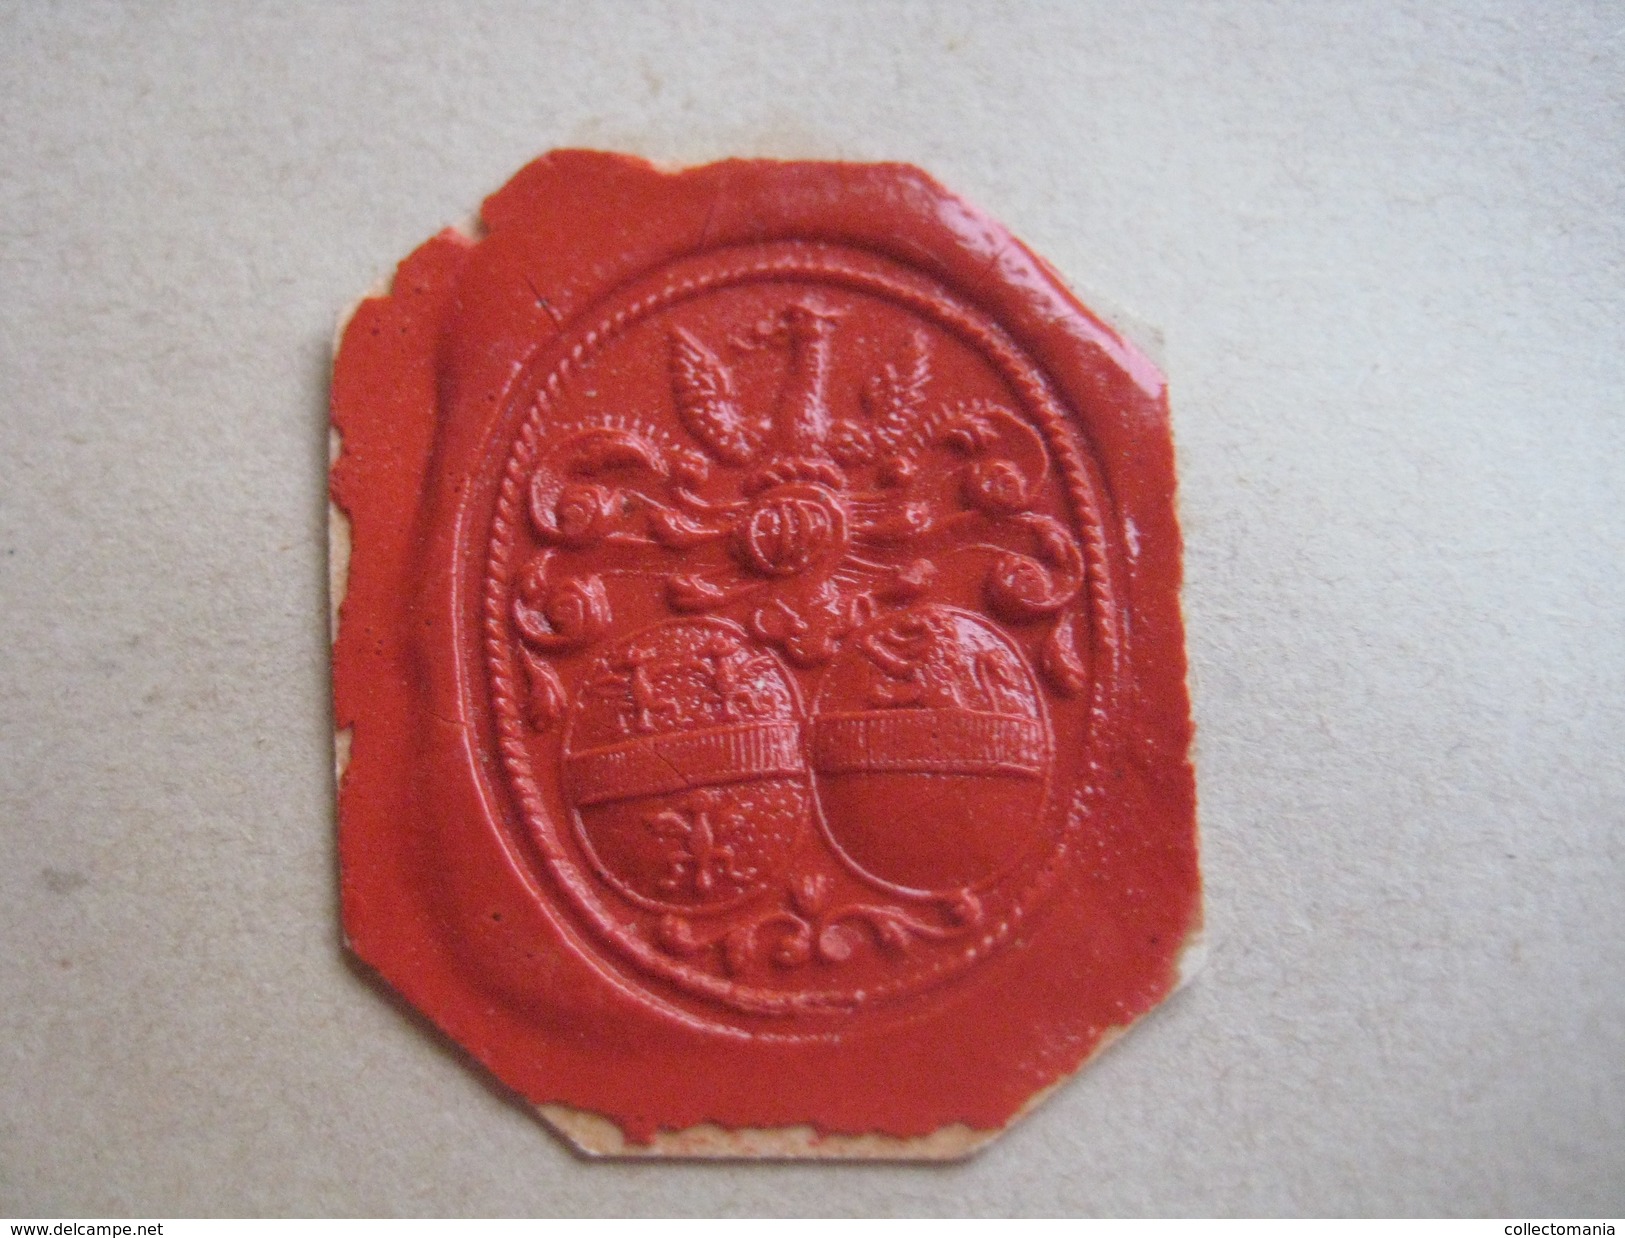 wax seals - lakzegels collection, 2cm à 4cm, before 1900 - sceaux de cire - adel familiekunde zegels van was, prachtig